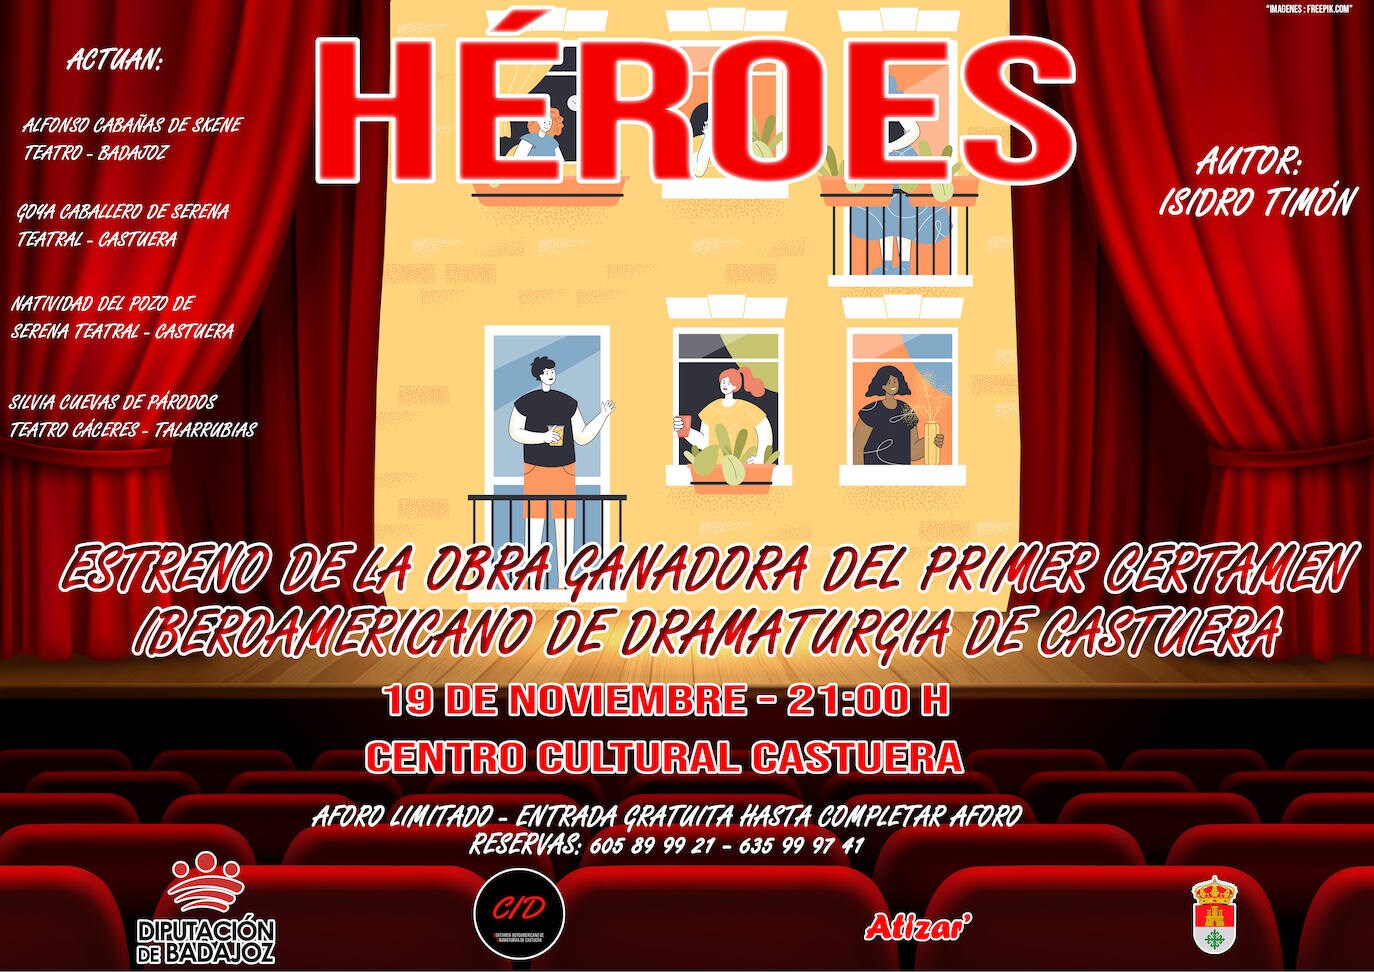 La concejalía de Cultura presenta el viernes 19 de noviembre la obra 'Héroes', de Isidro Timón